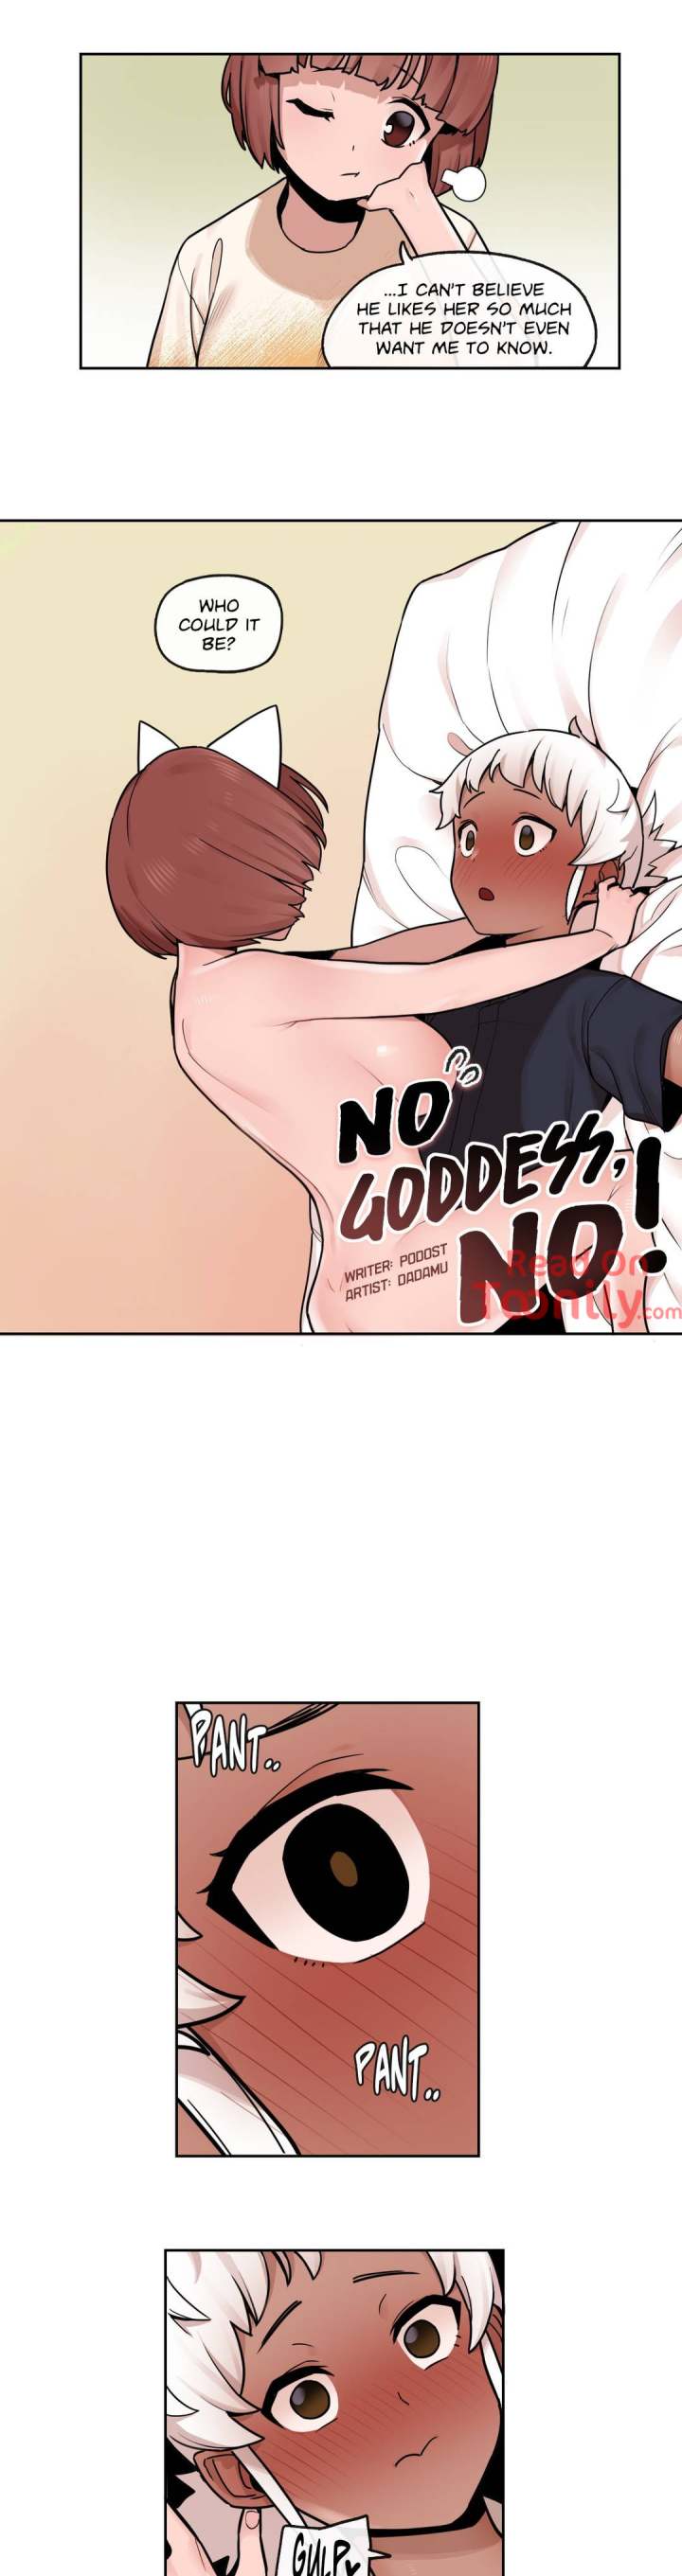 No Goddess, No! - Chapter 32 Page 2